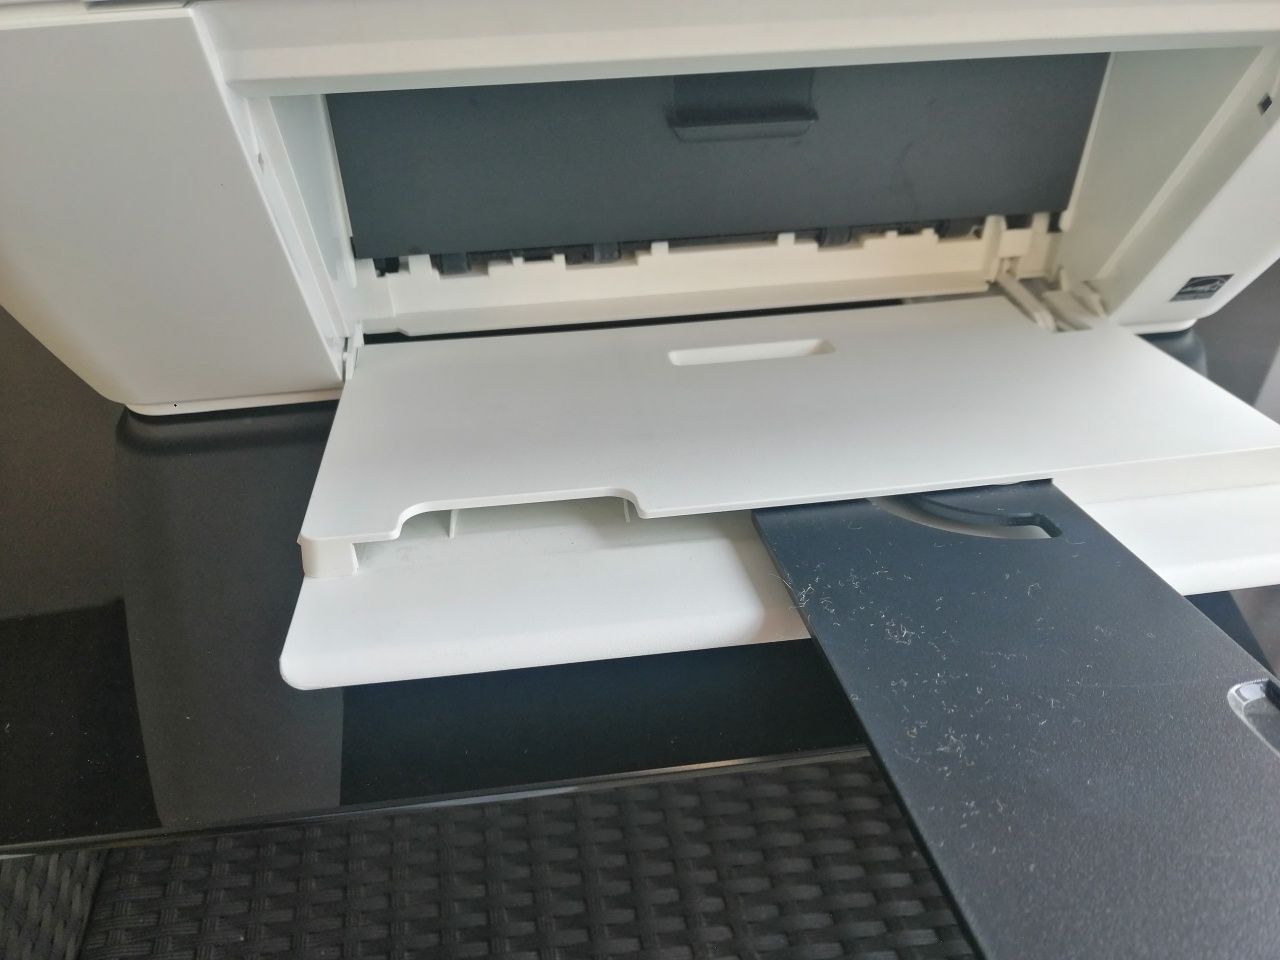 Imprimanta color+scanner HP 1510